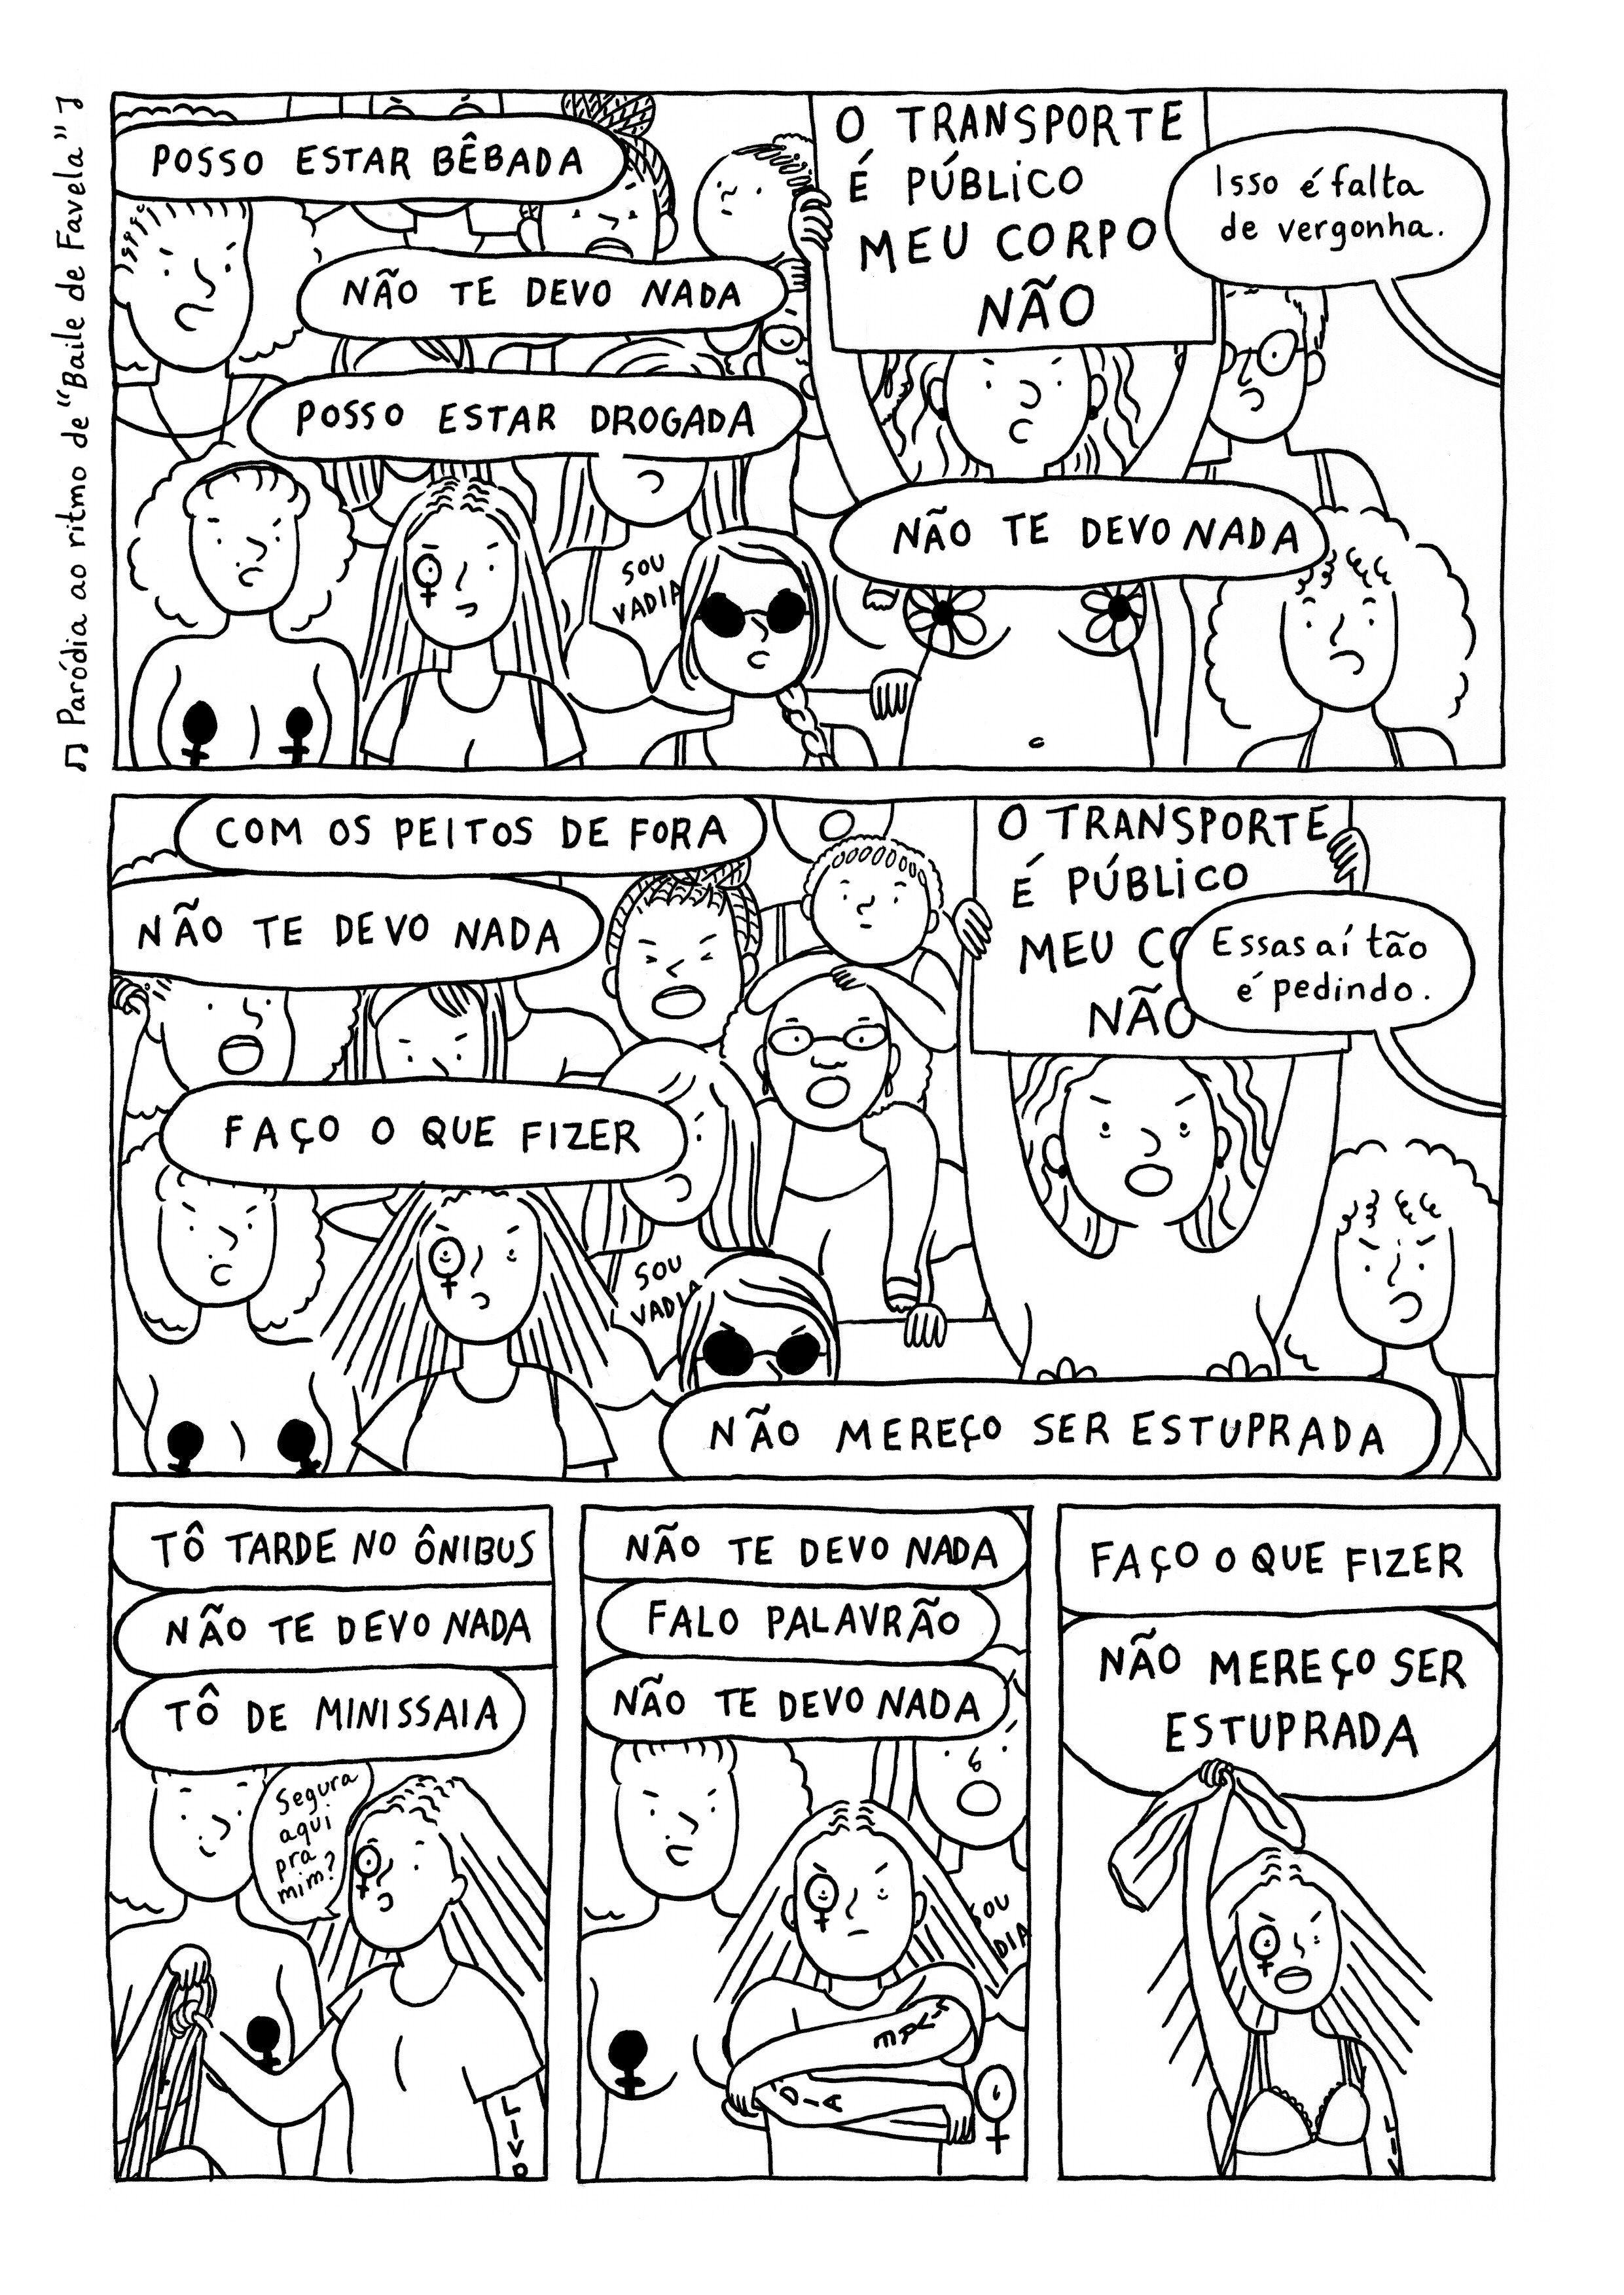 Hourly Comic Day! - by Janaína Esmeraldo - Cabelo-nuvem